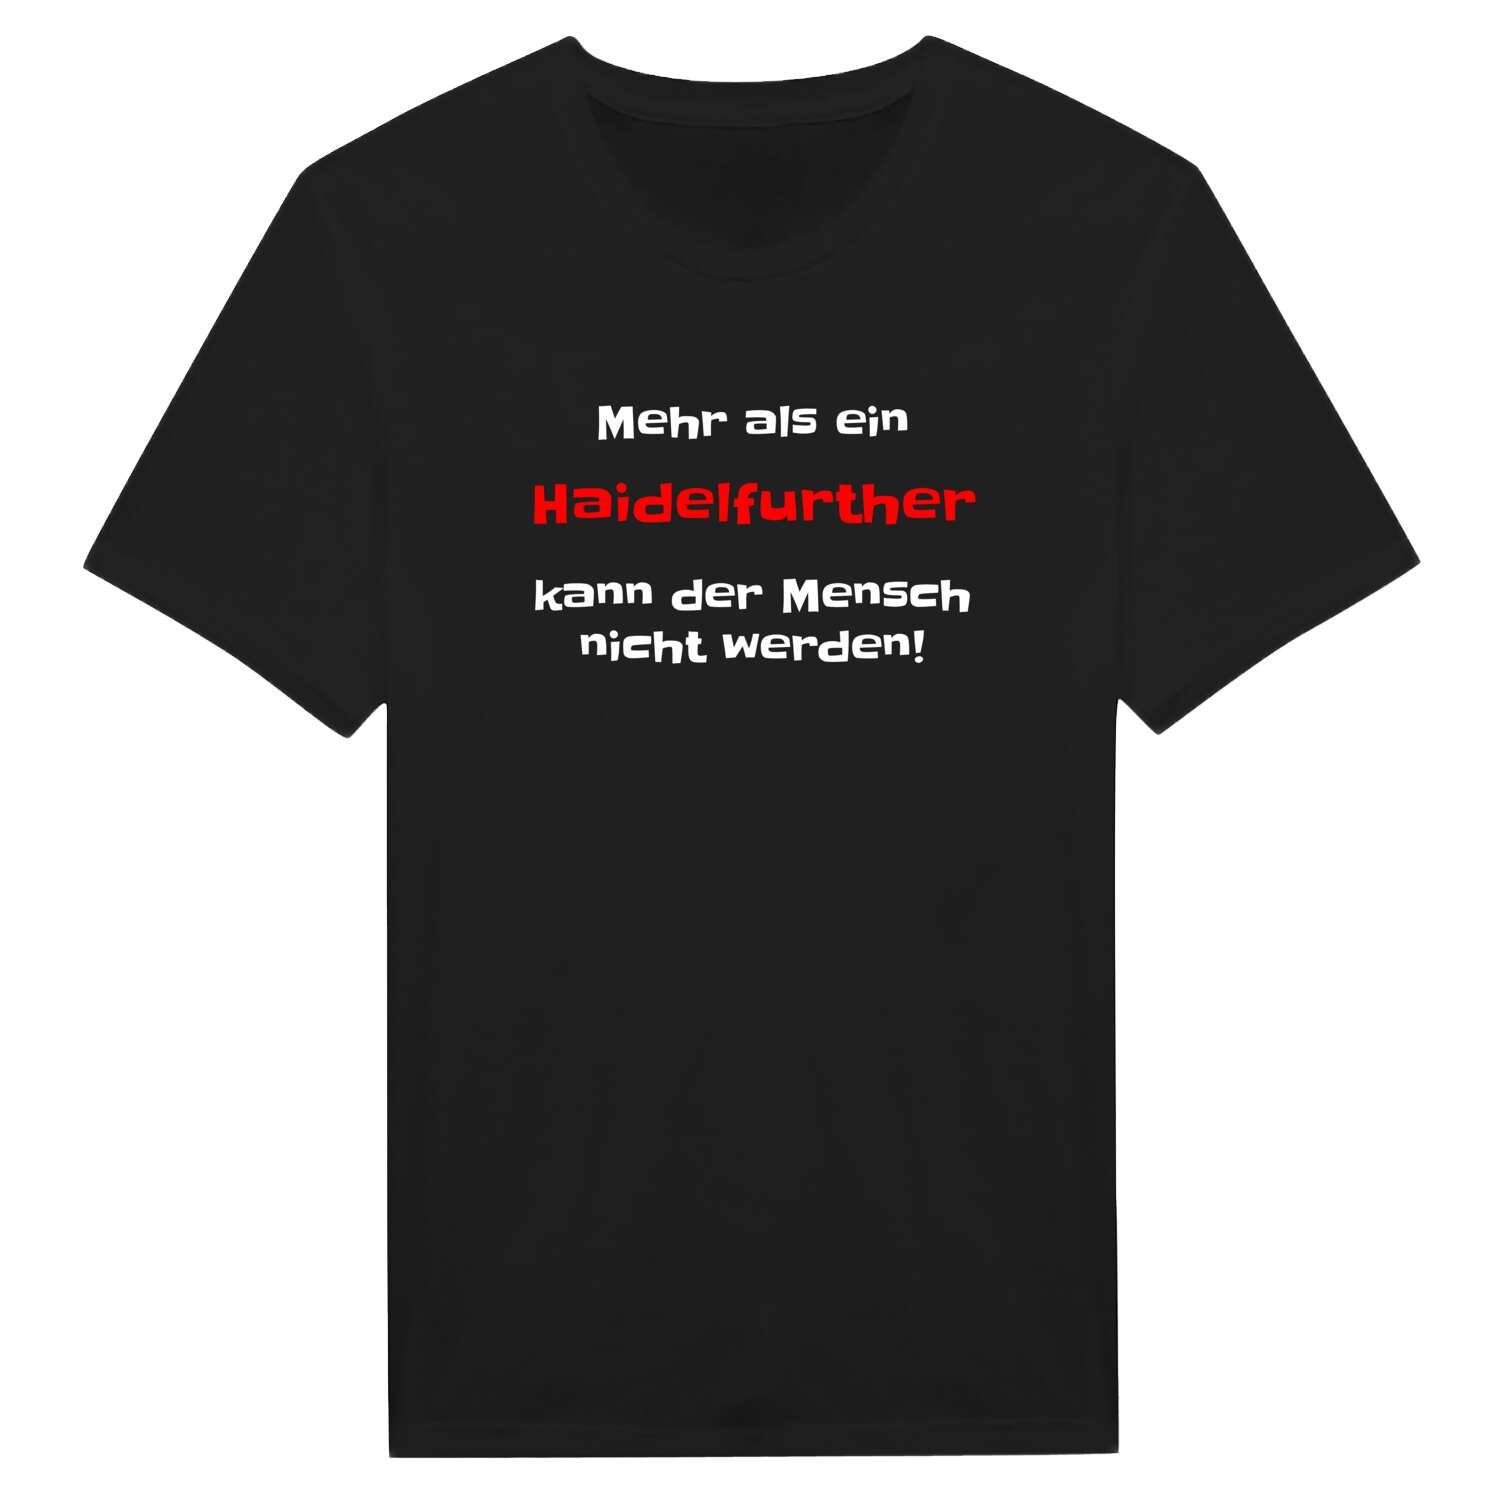 Haidelfurth T-Shirt »Mehr als ein«